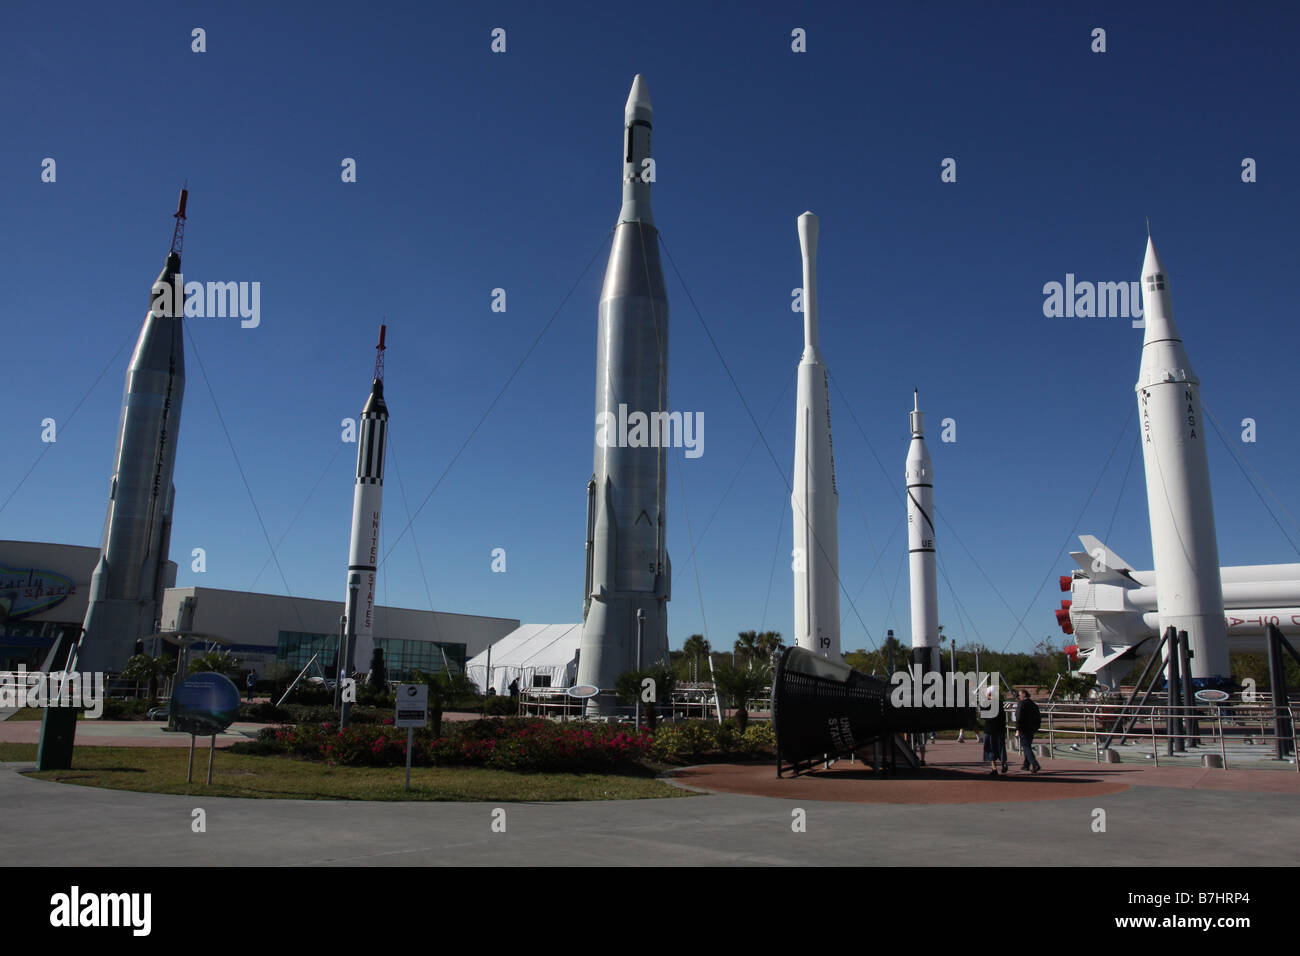 Mercure la NASA des fusées de la famille visitor centre Kennedy Space Center de Cape Canaveral d''affichage musée rocket Banque D'Images